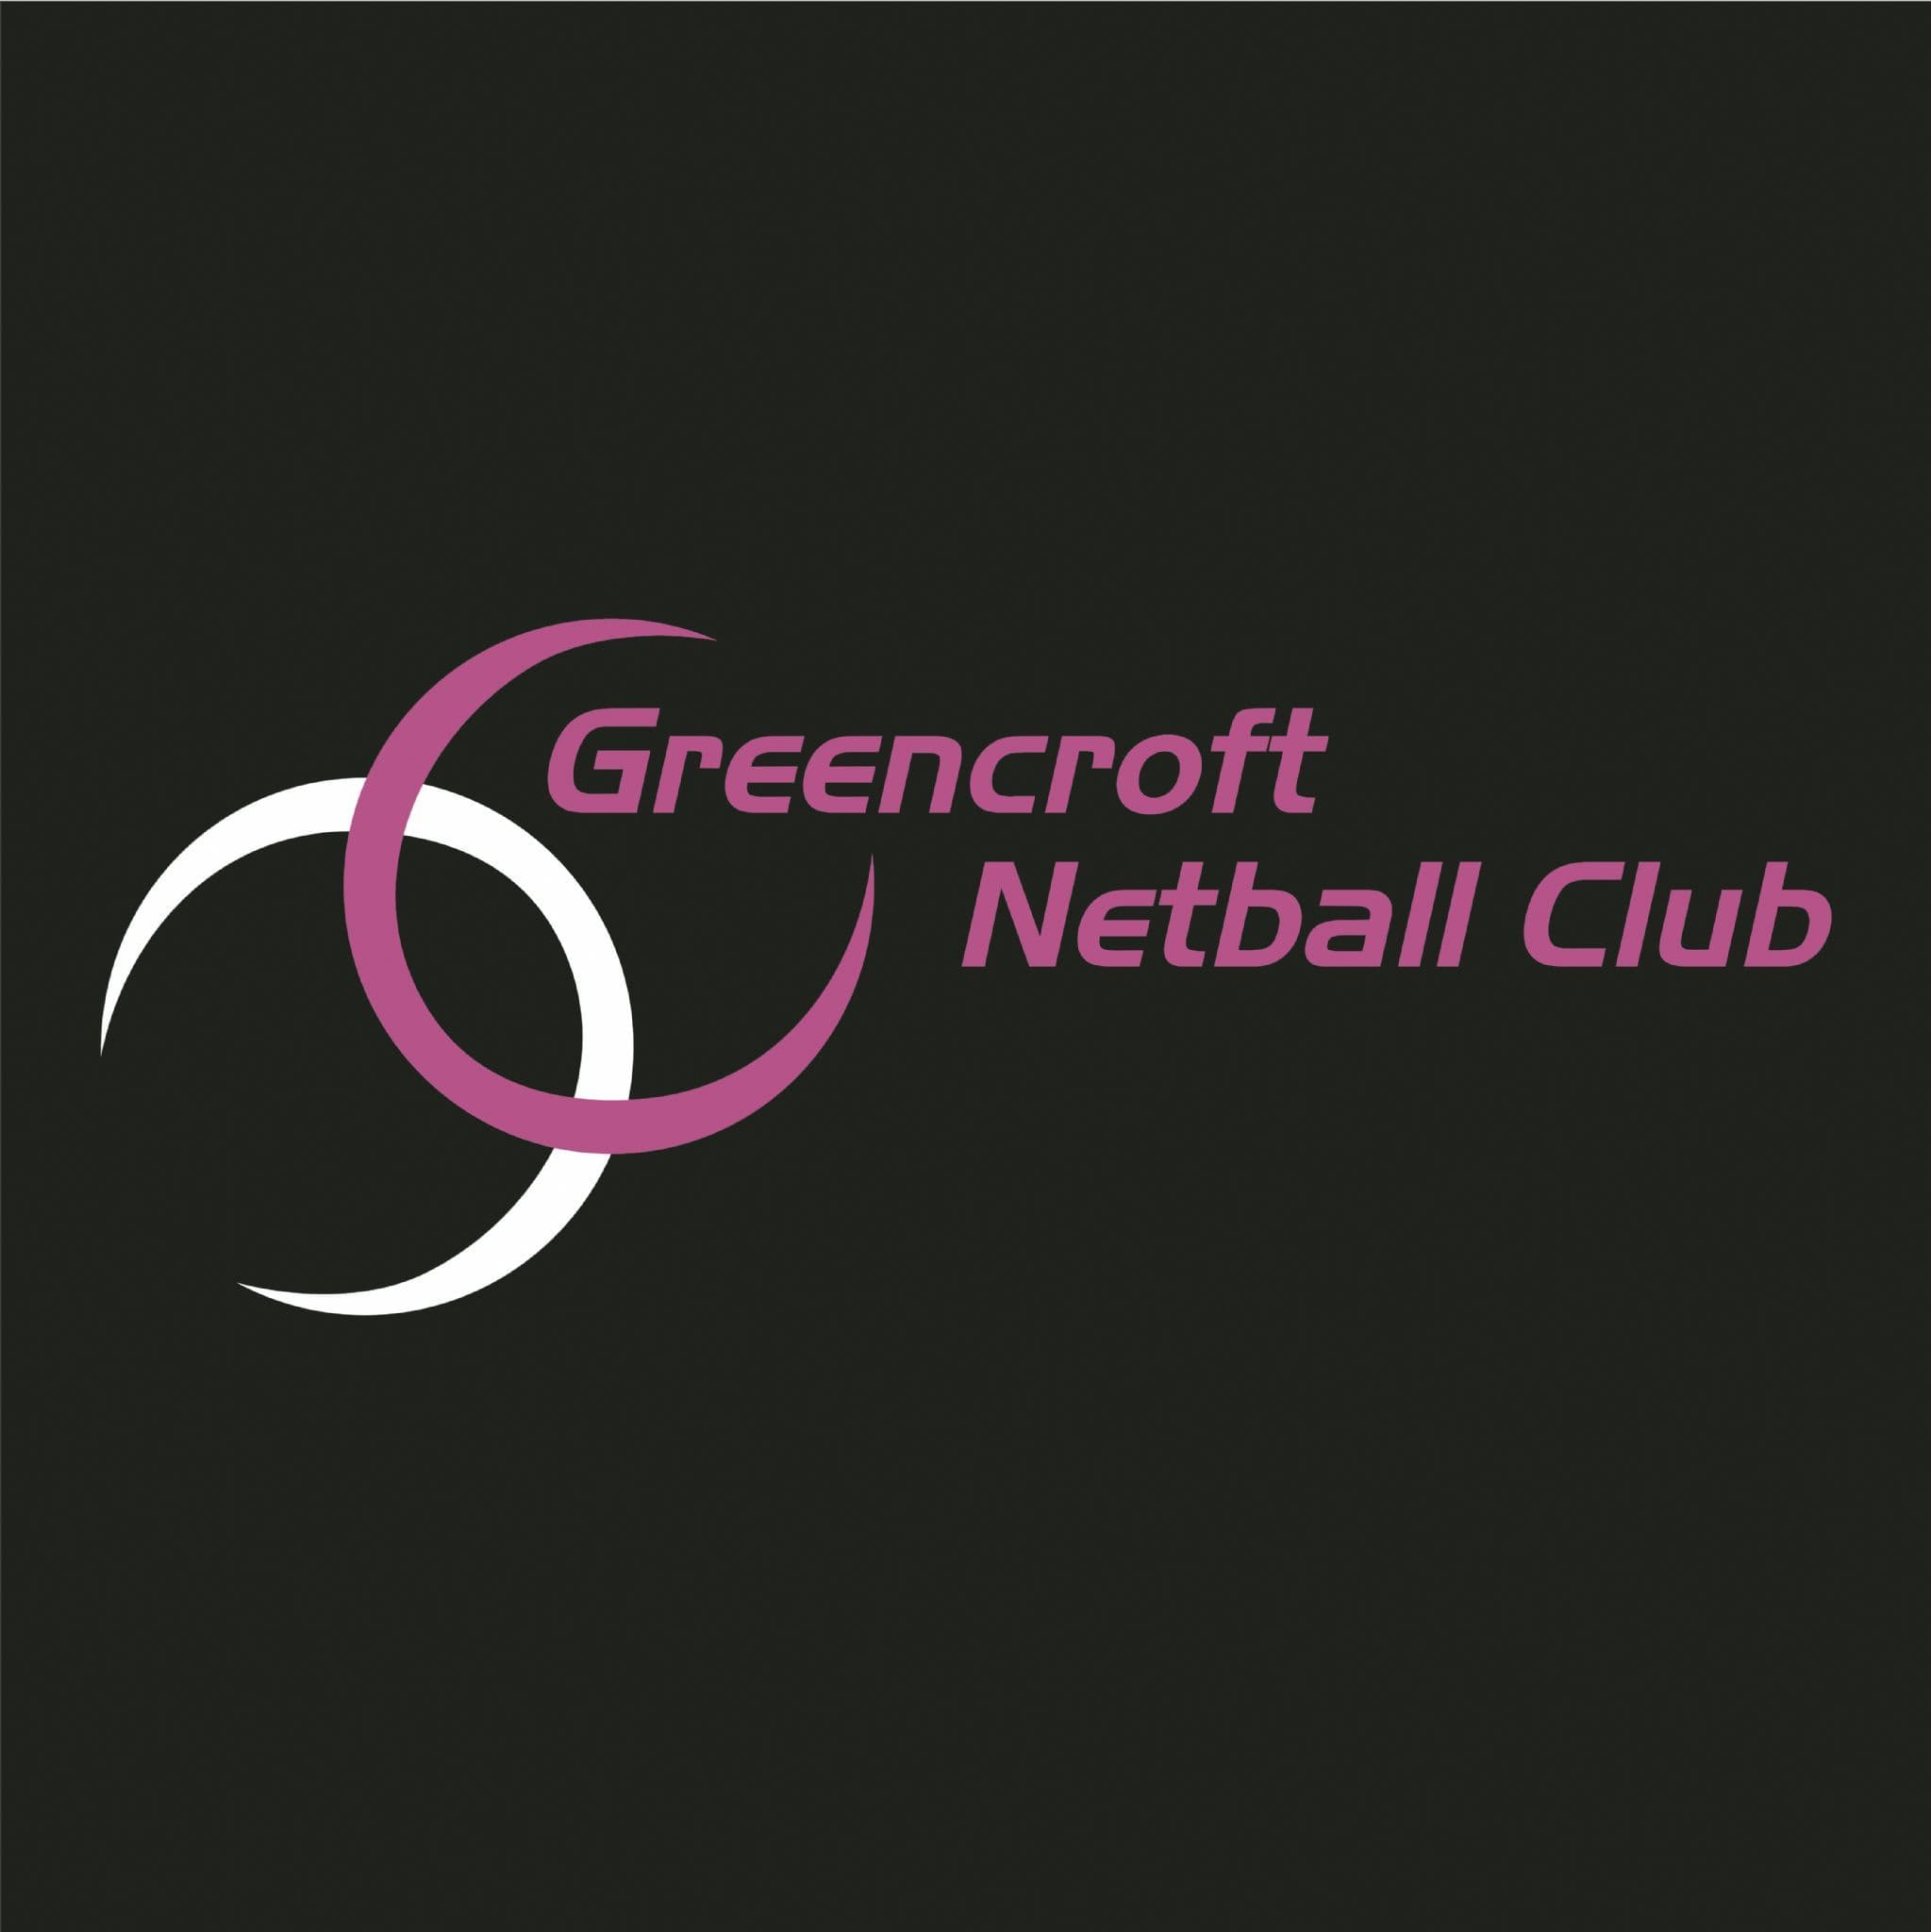 Greencroft Netball Club